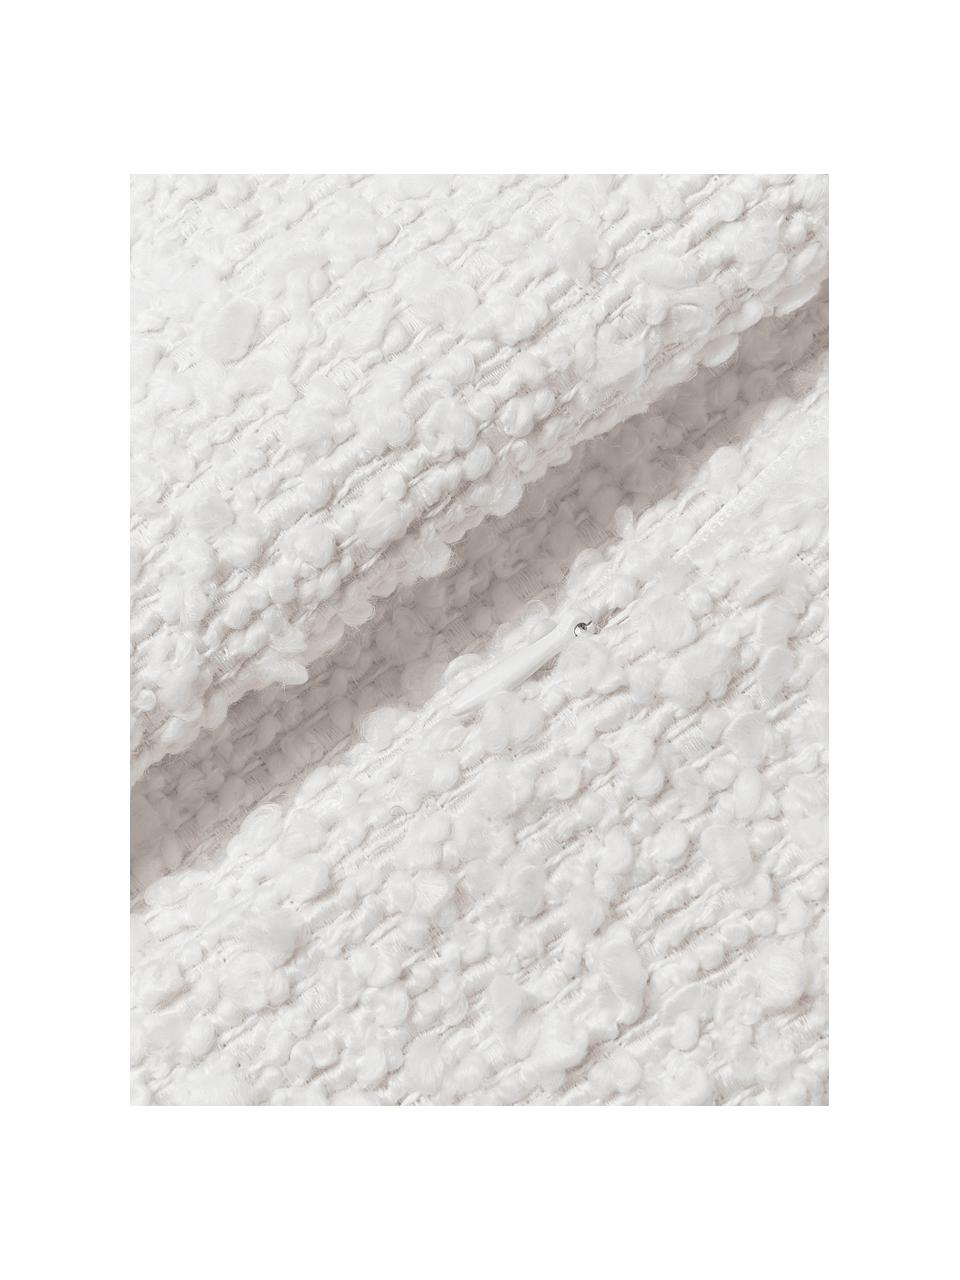 Housse de coussin 30x50 en tissu bouclé Bellamie, Tissu bouclé (95 % polyester, 5 % polyacrylique)

Le bouclé est un matériau qui se caractérise par sa structure incurvée irrégulière. La surface caractéristique est créée par des boucles tissées de fils de différents types, qui confèrent au tissu une structure unique. La structure bouclée a un effet à la fois isolant et moelleux, ce qui rend le tissu particulièrement douillet, Bouclé blanc, larg. 30 x long. 50 cm